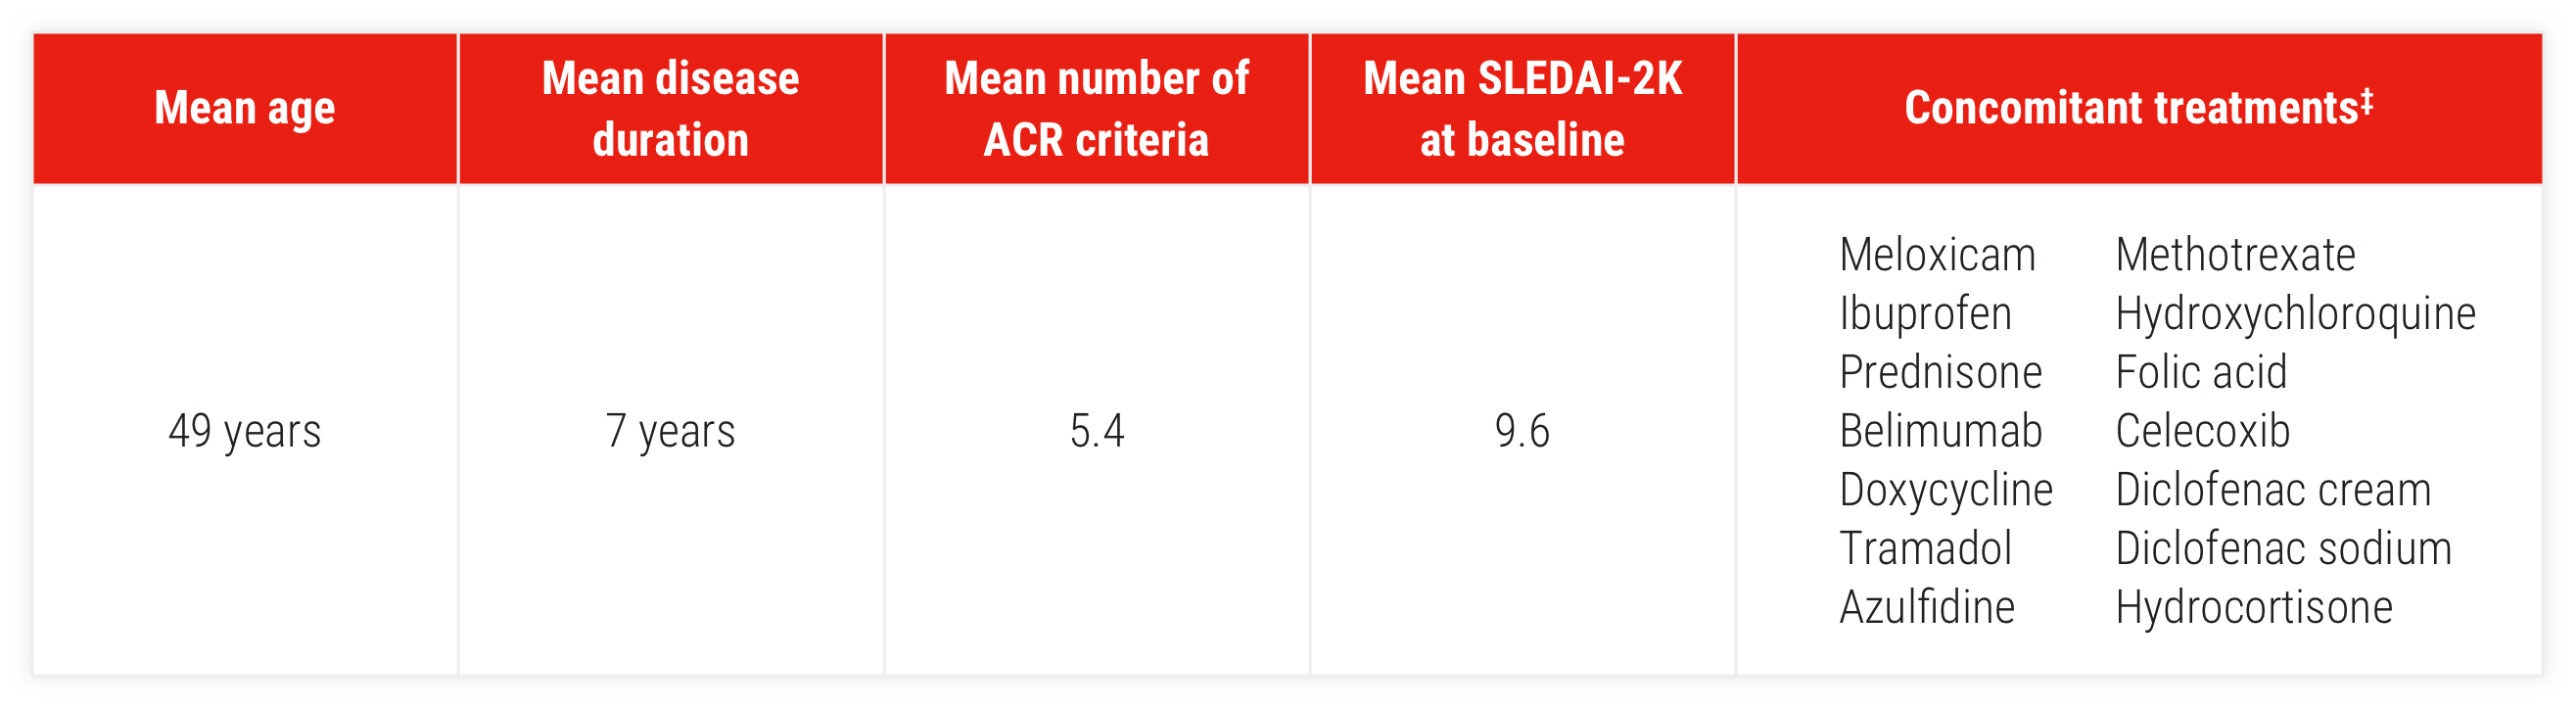 Acthar Gel SLE patient characteristics